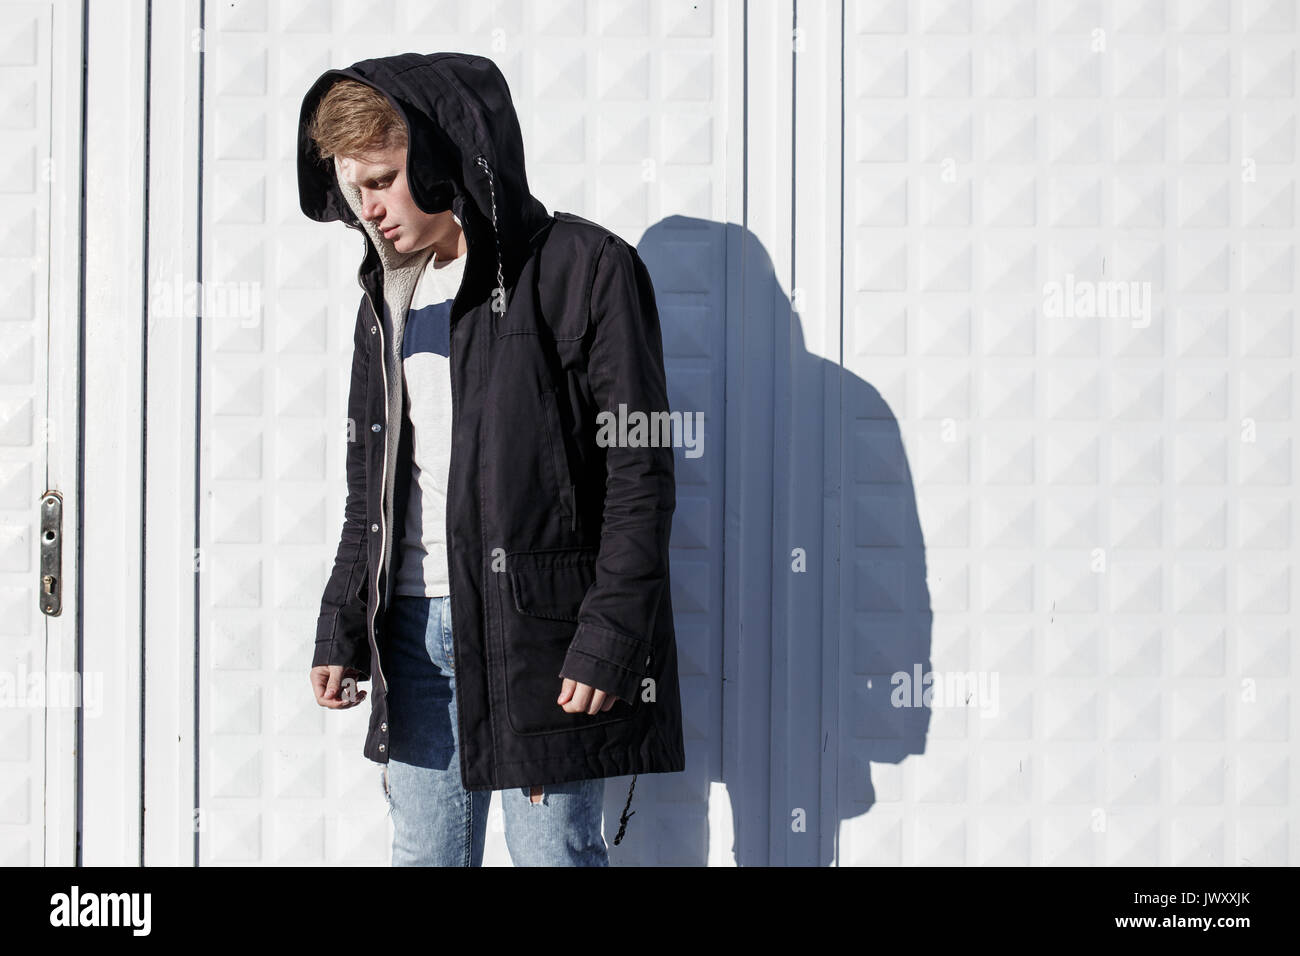 Junge stilvolle rothaarige Mann im trendigen Outfit gegen städtischen Hintergrund posiert Stockfoto